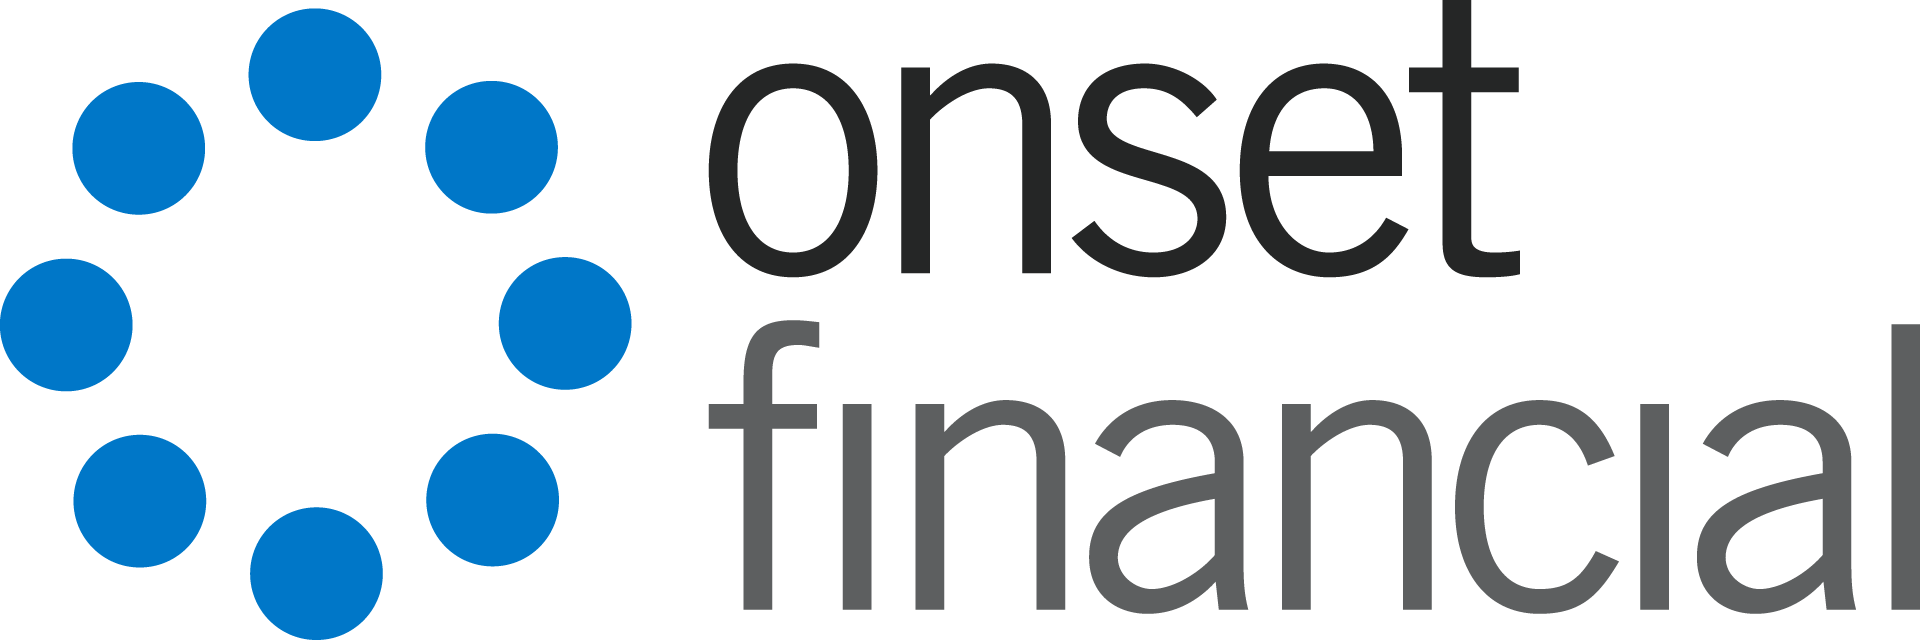 Onset Financial, Inc. logo